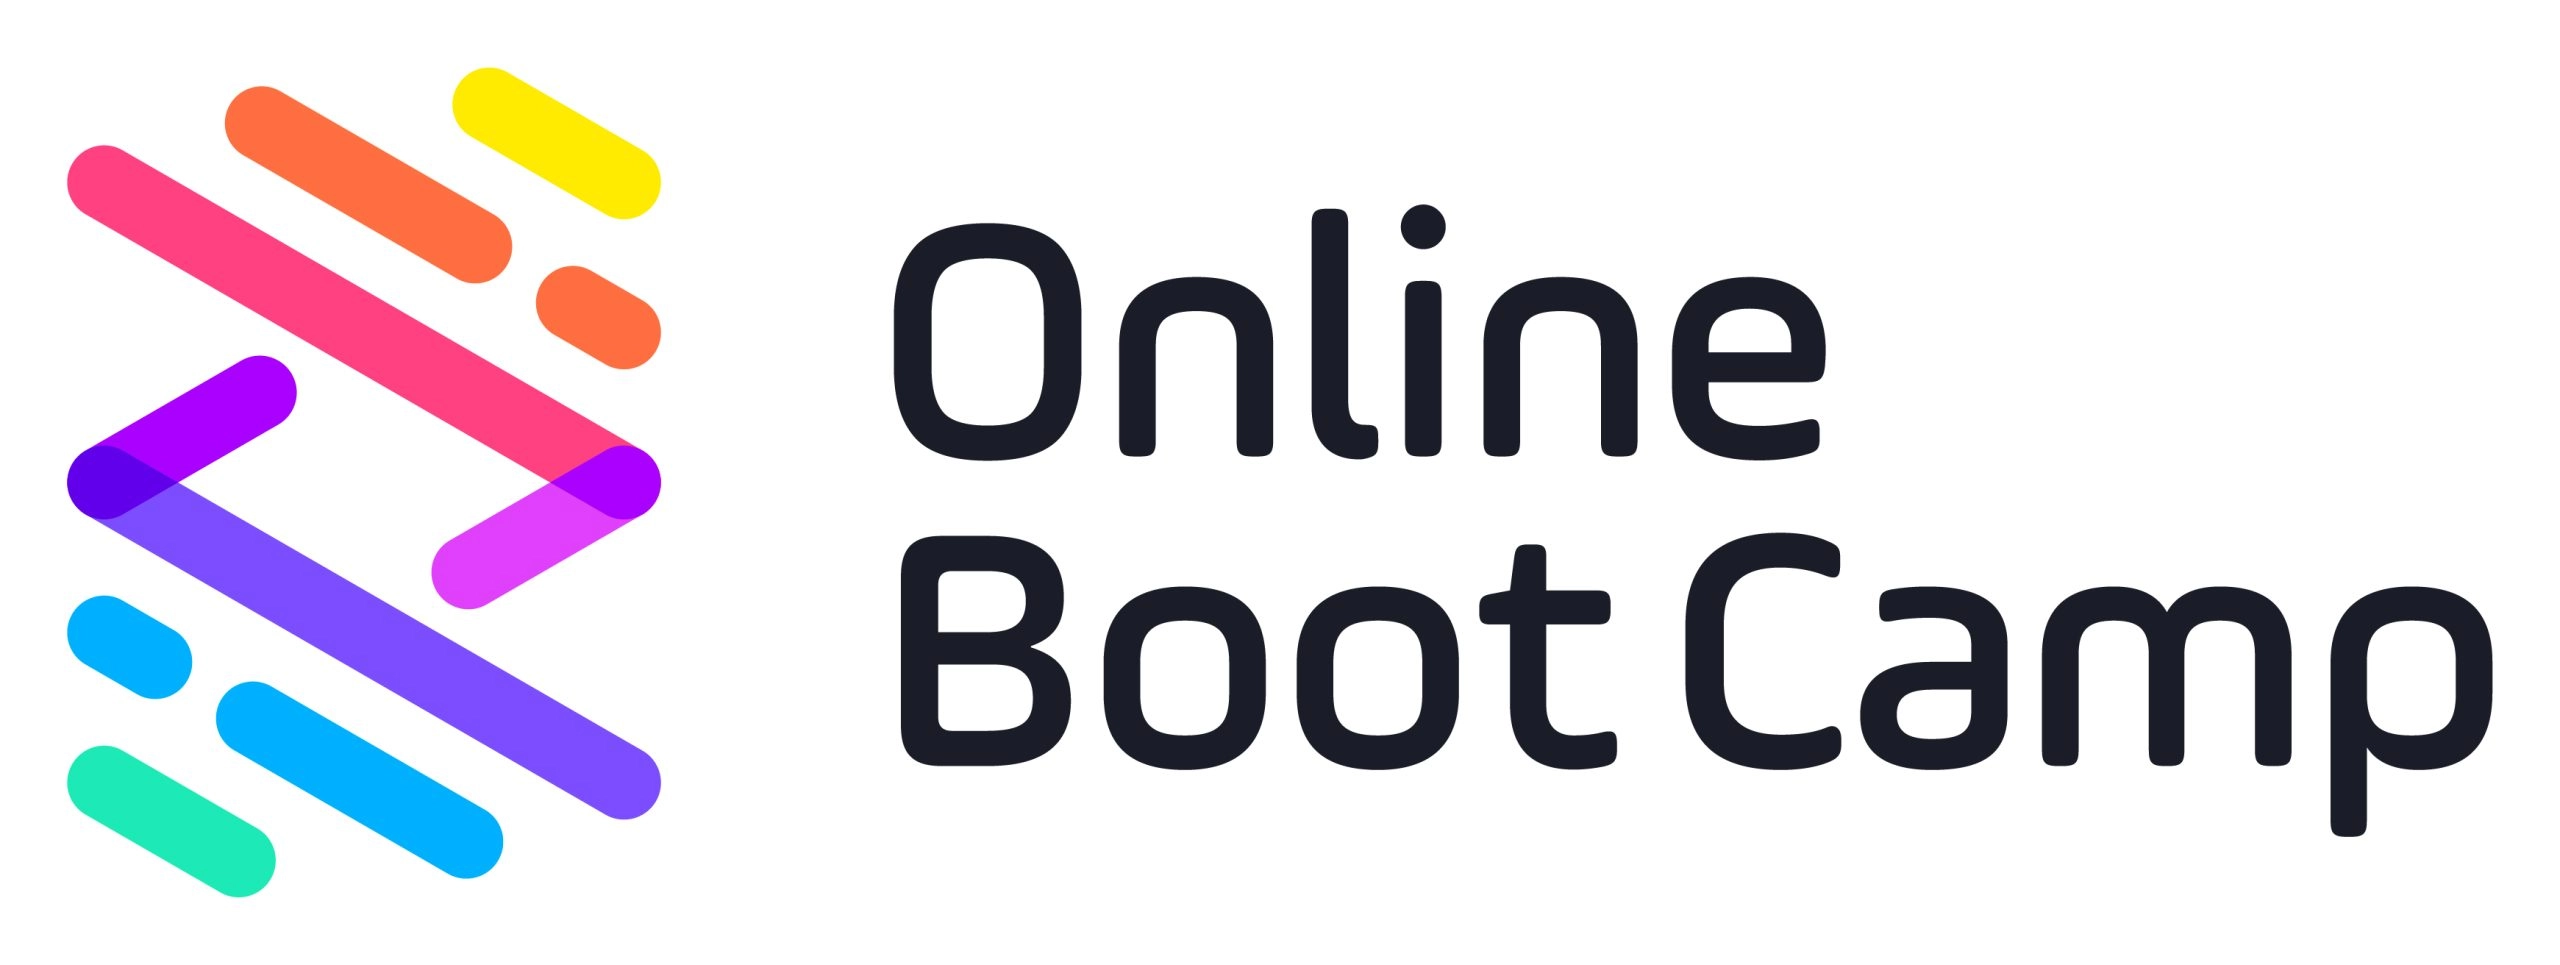 Online BootCamp